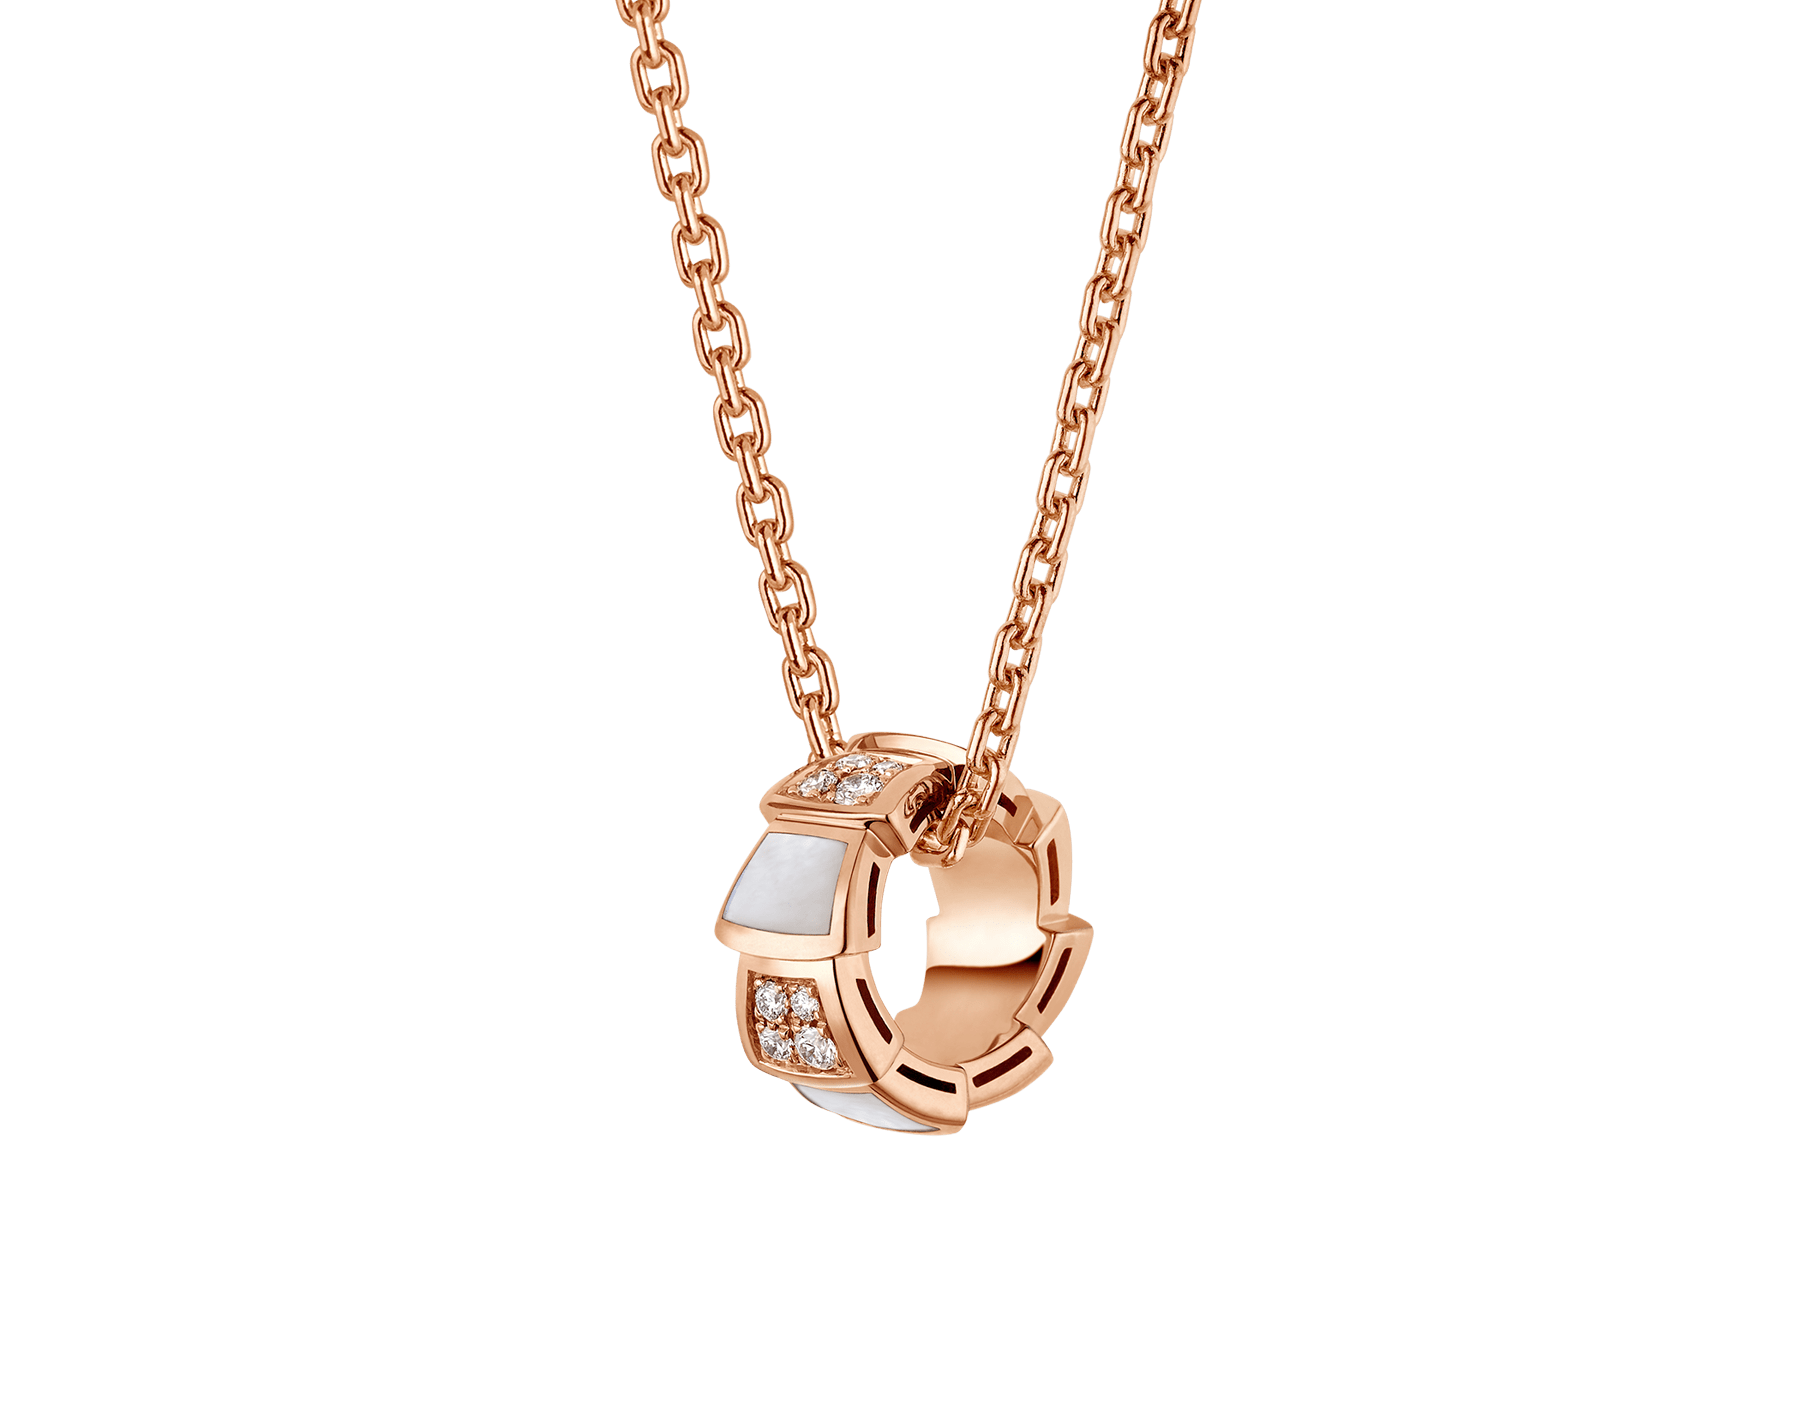 Venta al por mayor de joyería de diseño personalizado, collar de oro rosa de 18 quilates con elementos de nácar y pavé de diamantes en el colgante. Joyería OEM/ODM